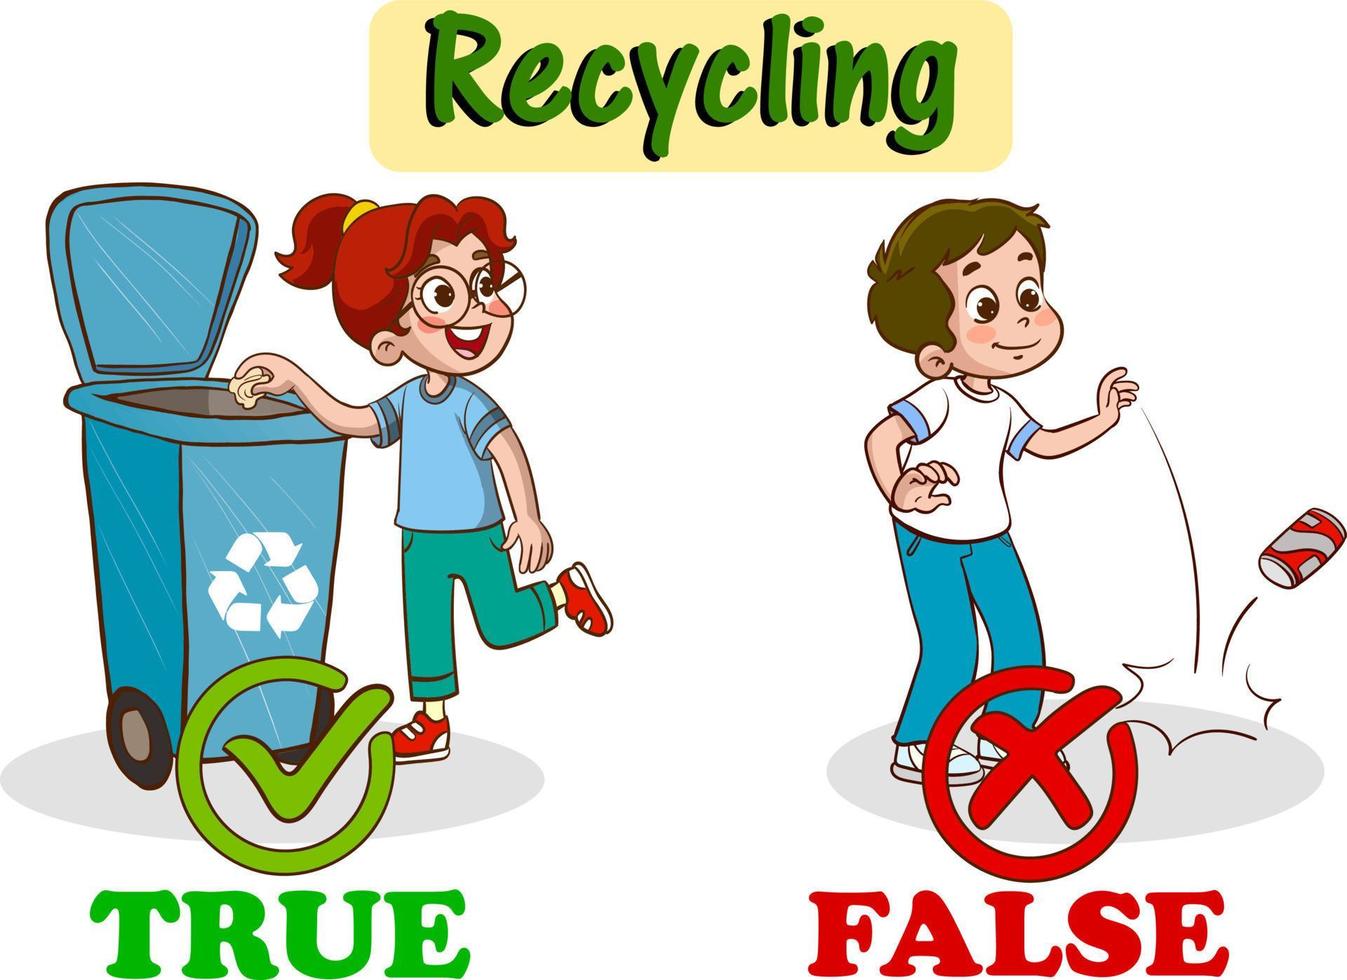 niños tirando basura en la papelera de reciclaje. niños contaminando el medio ambiente vector de dibujos animados